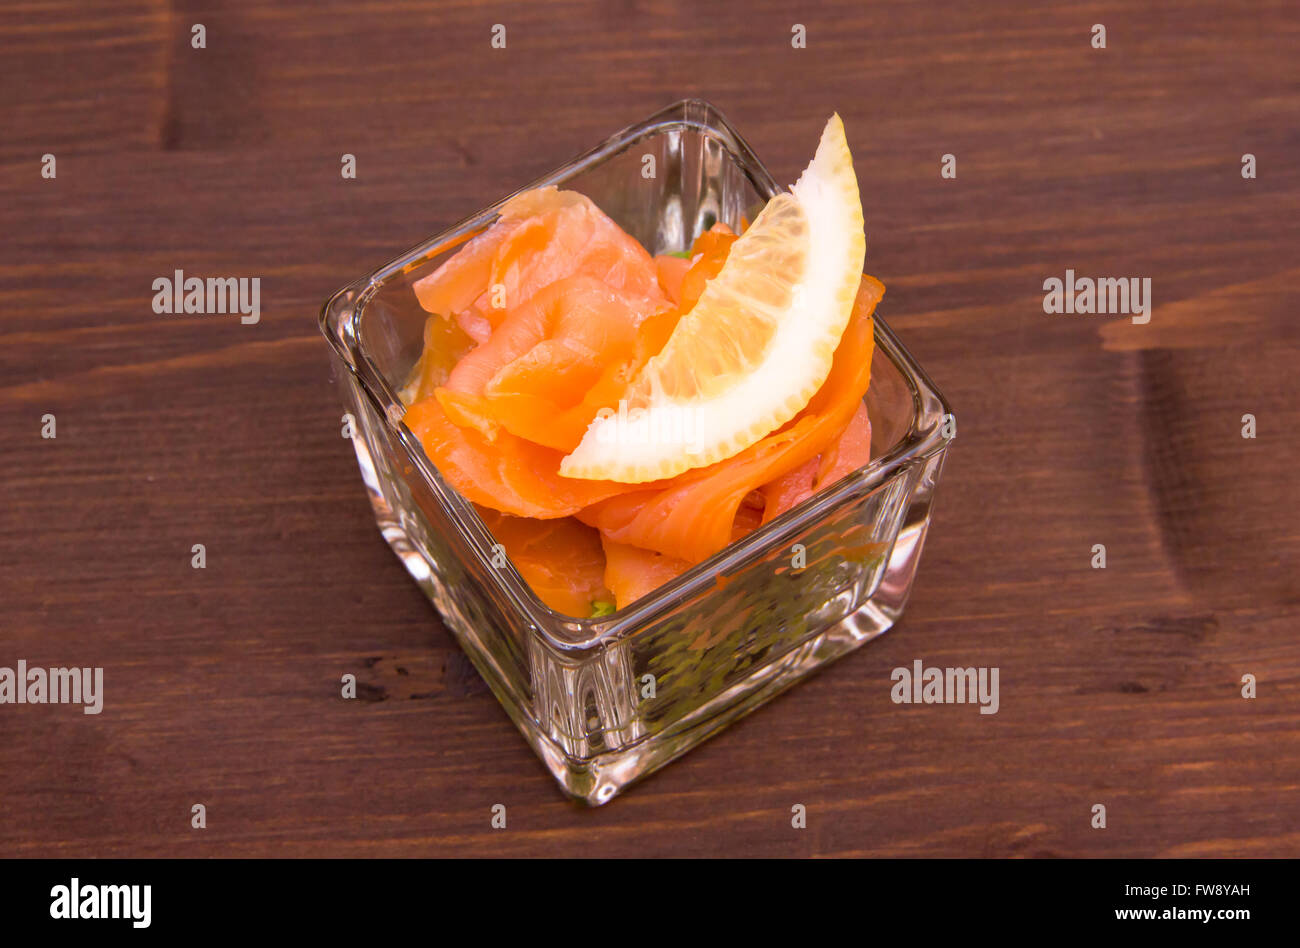 Avocado e salmone affumicato su vetro quadrato sul tavolo in legno visto da sopra Foto Stock